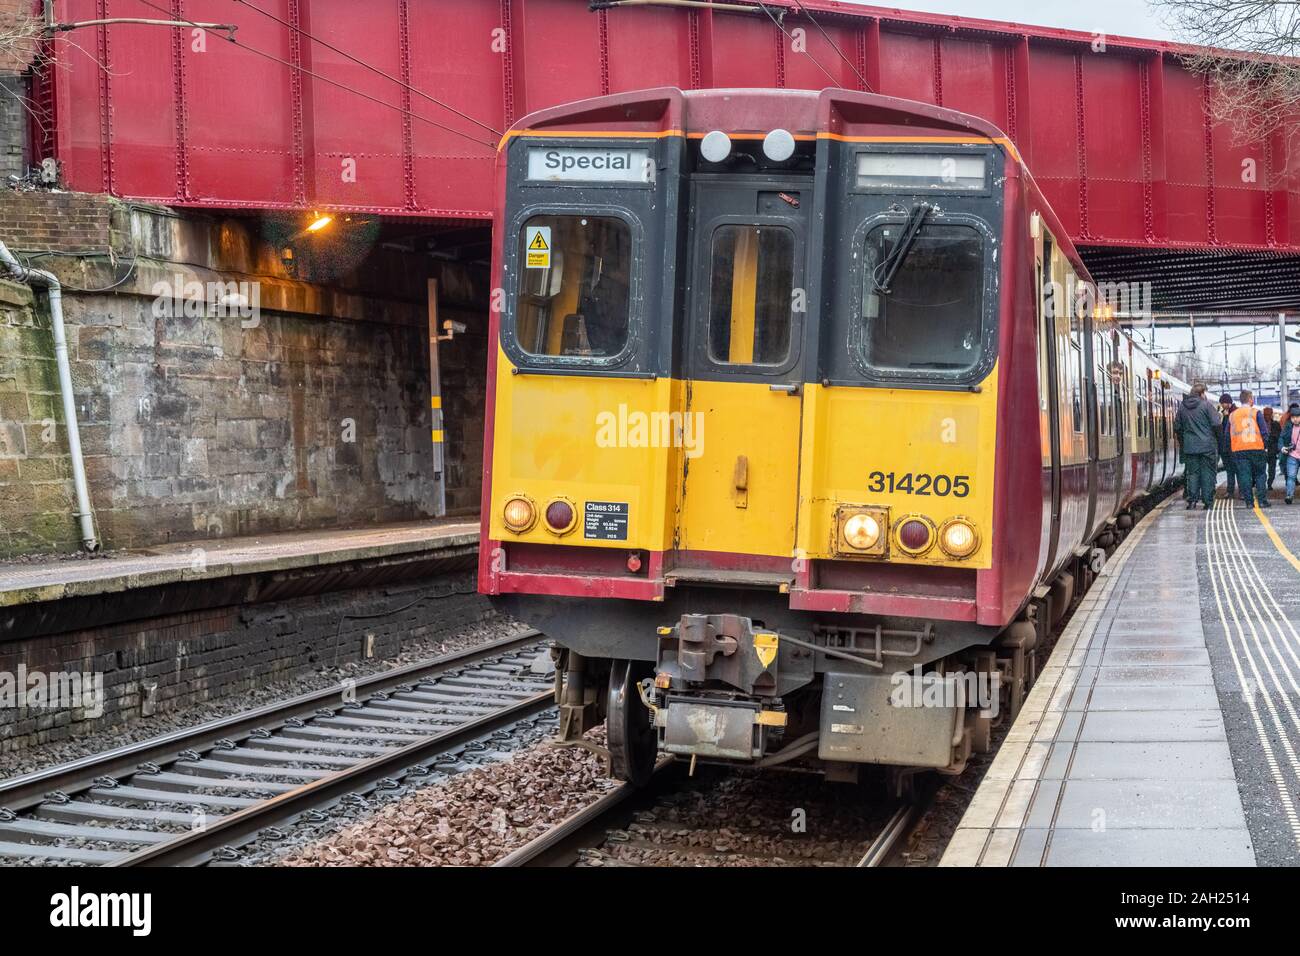 El miércoles 18 de diciembre de 2019 Scotrail operado una clase 314 tren eléctrico gira de despedida para marcar el retiral de este tren clase después de 40 años Foto de stock